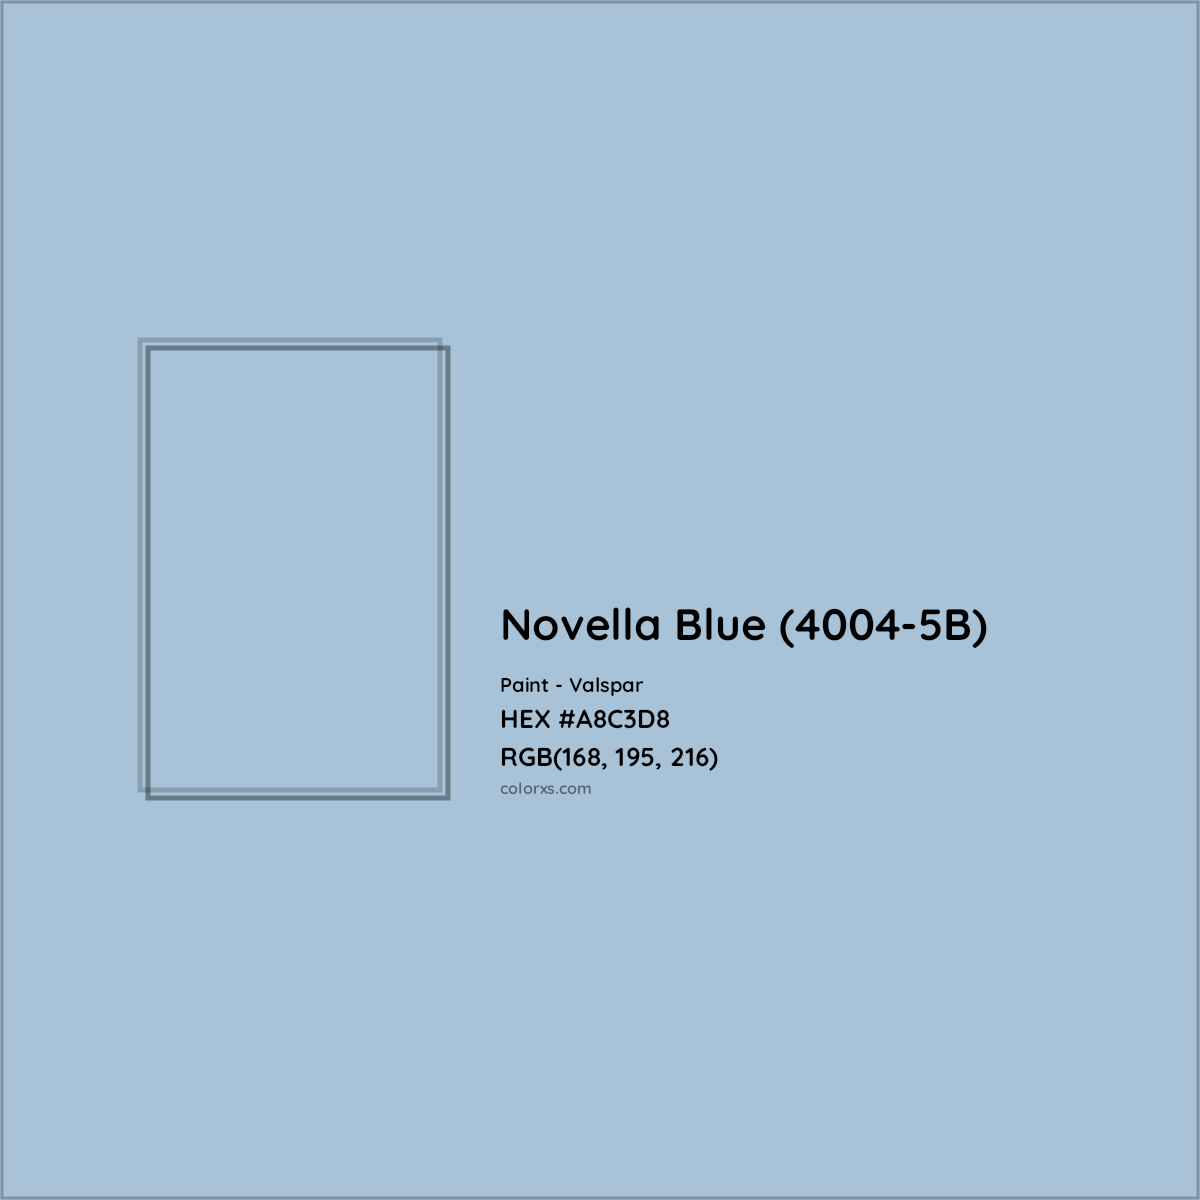 HEX #A8C3D8 Novella Blue (4004-5B) Paint Valspar - Color Code